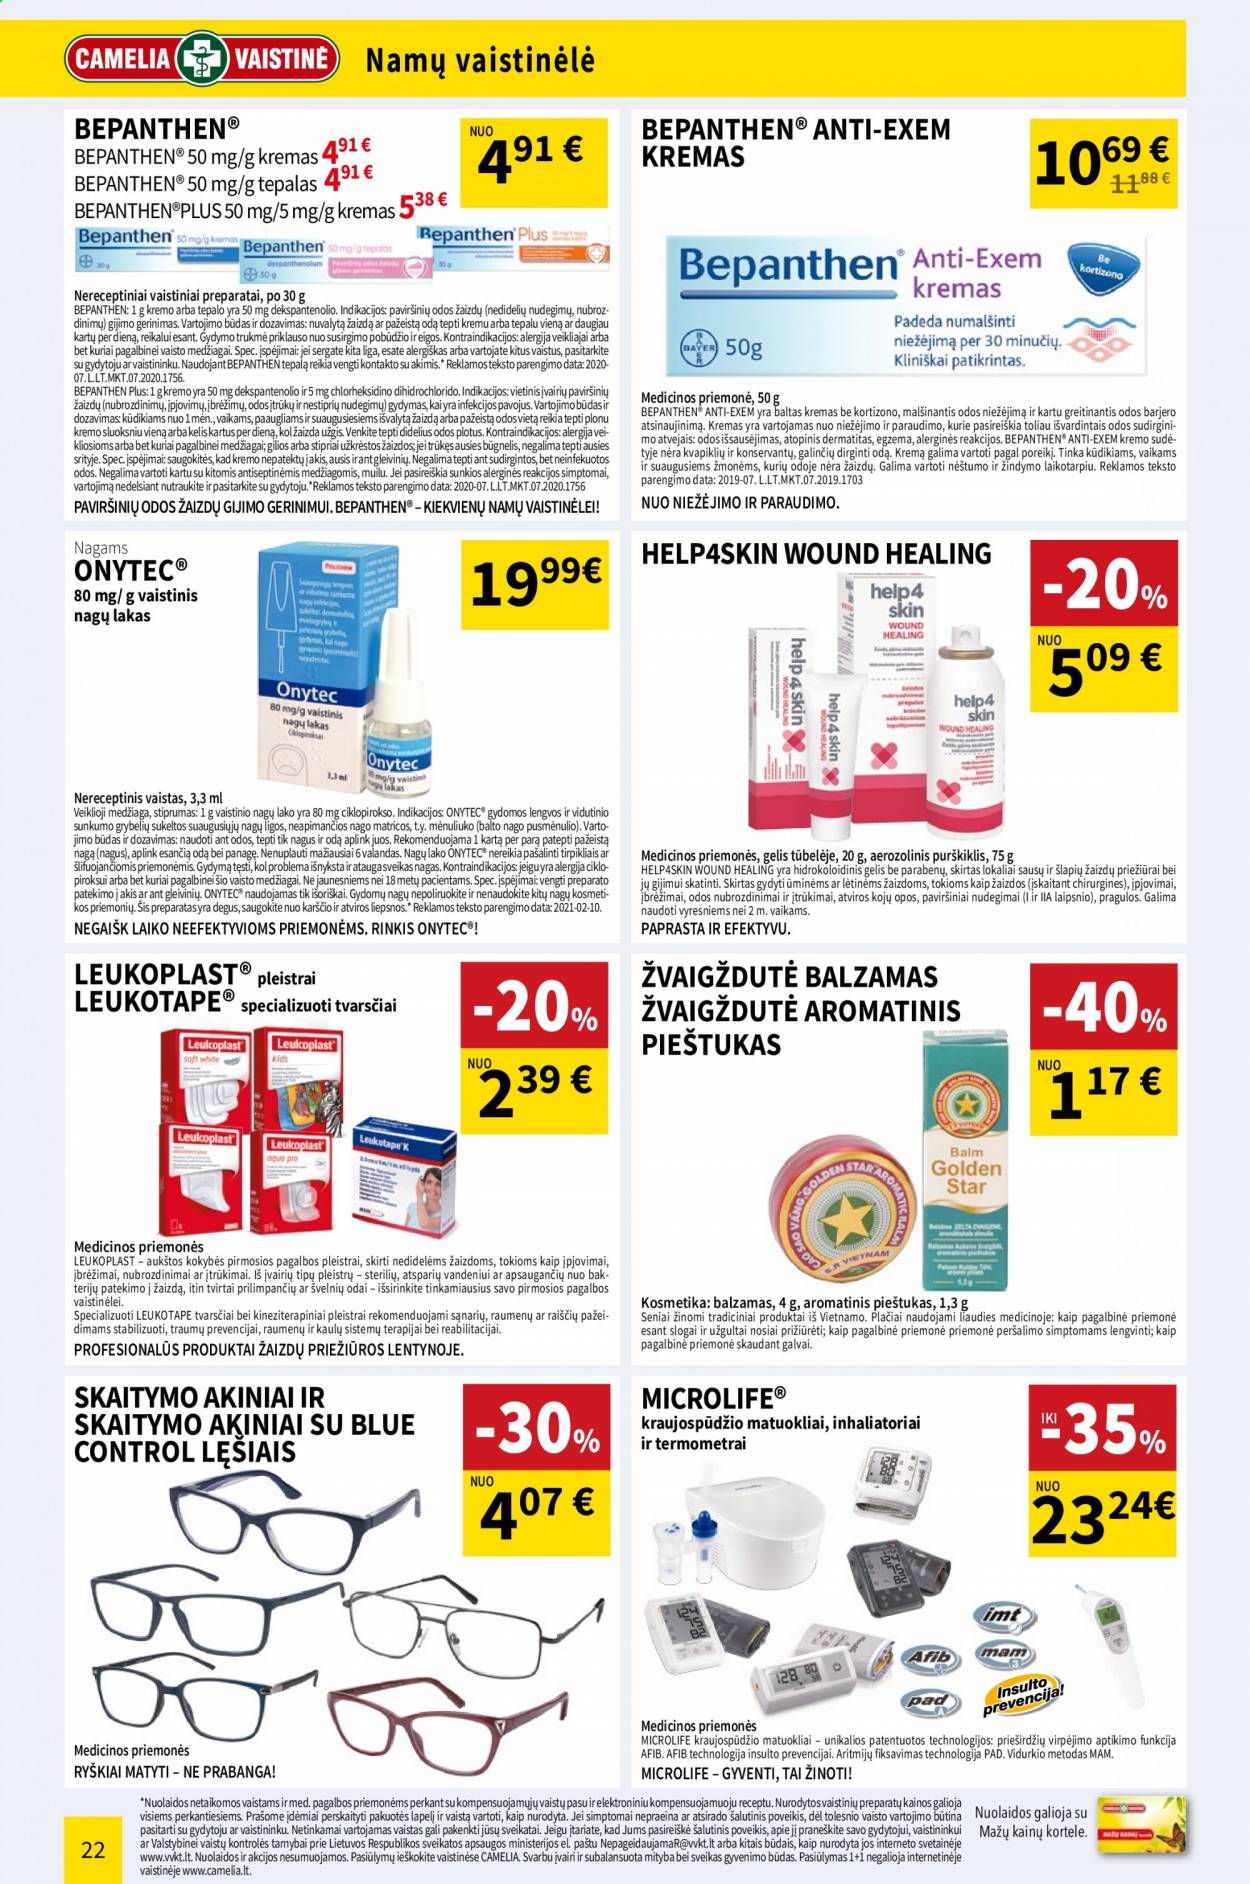 thumbnail - „CAMELIA Vaistinė“ leidinys - 2021 05 01 - 2021 05 31 - Išpardavimų produktai - kremas, Bepanthen, Bepanthen anti-exem, Onytec, pleistrai, akiniai, skaitymo akiniai. 22 puslapis.